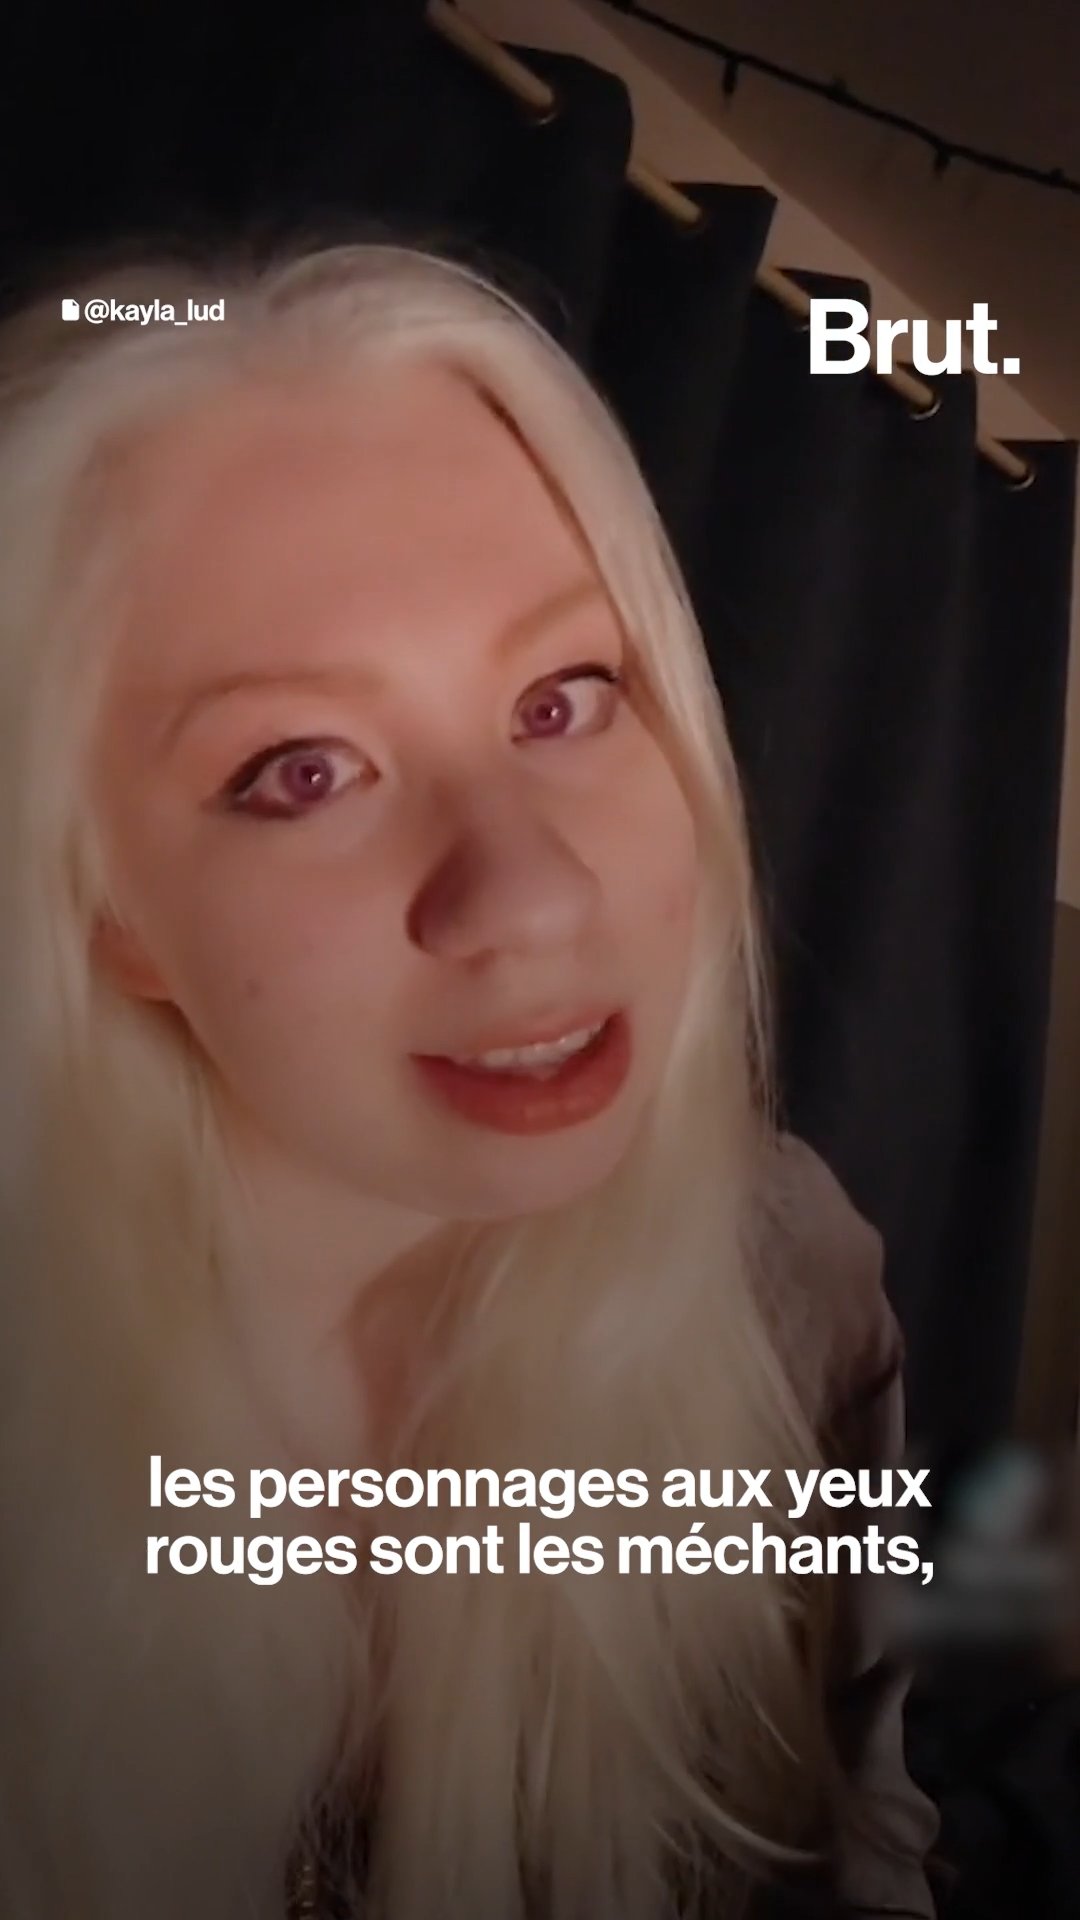 Megyn Kelly Anal Porn - Albinos, ils parlent de leur maladie sur les rÃ©seaux sociaux - L'ABESTIT